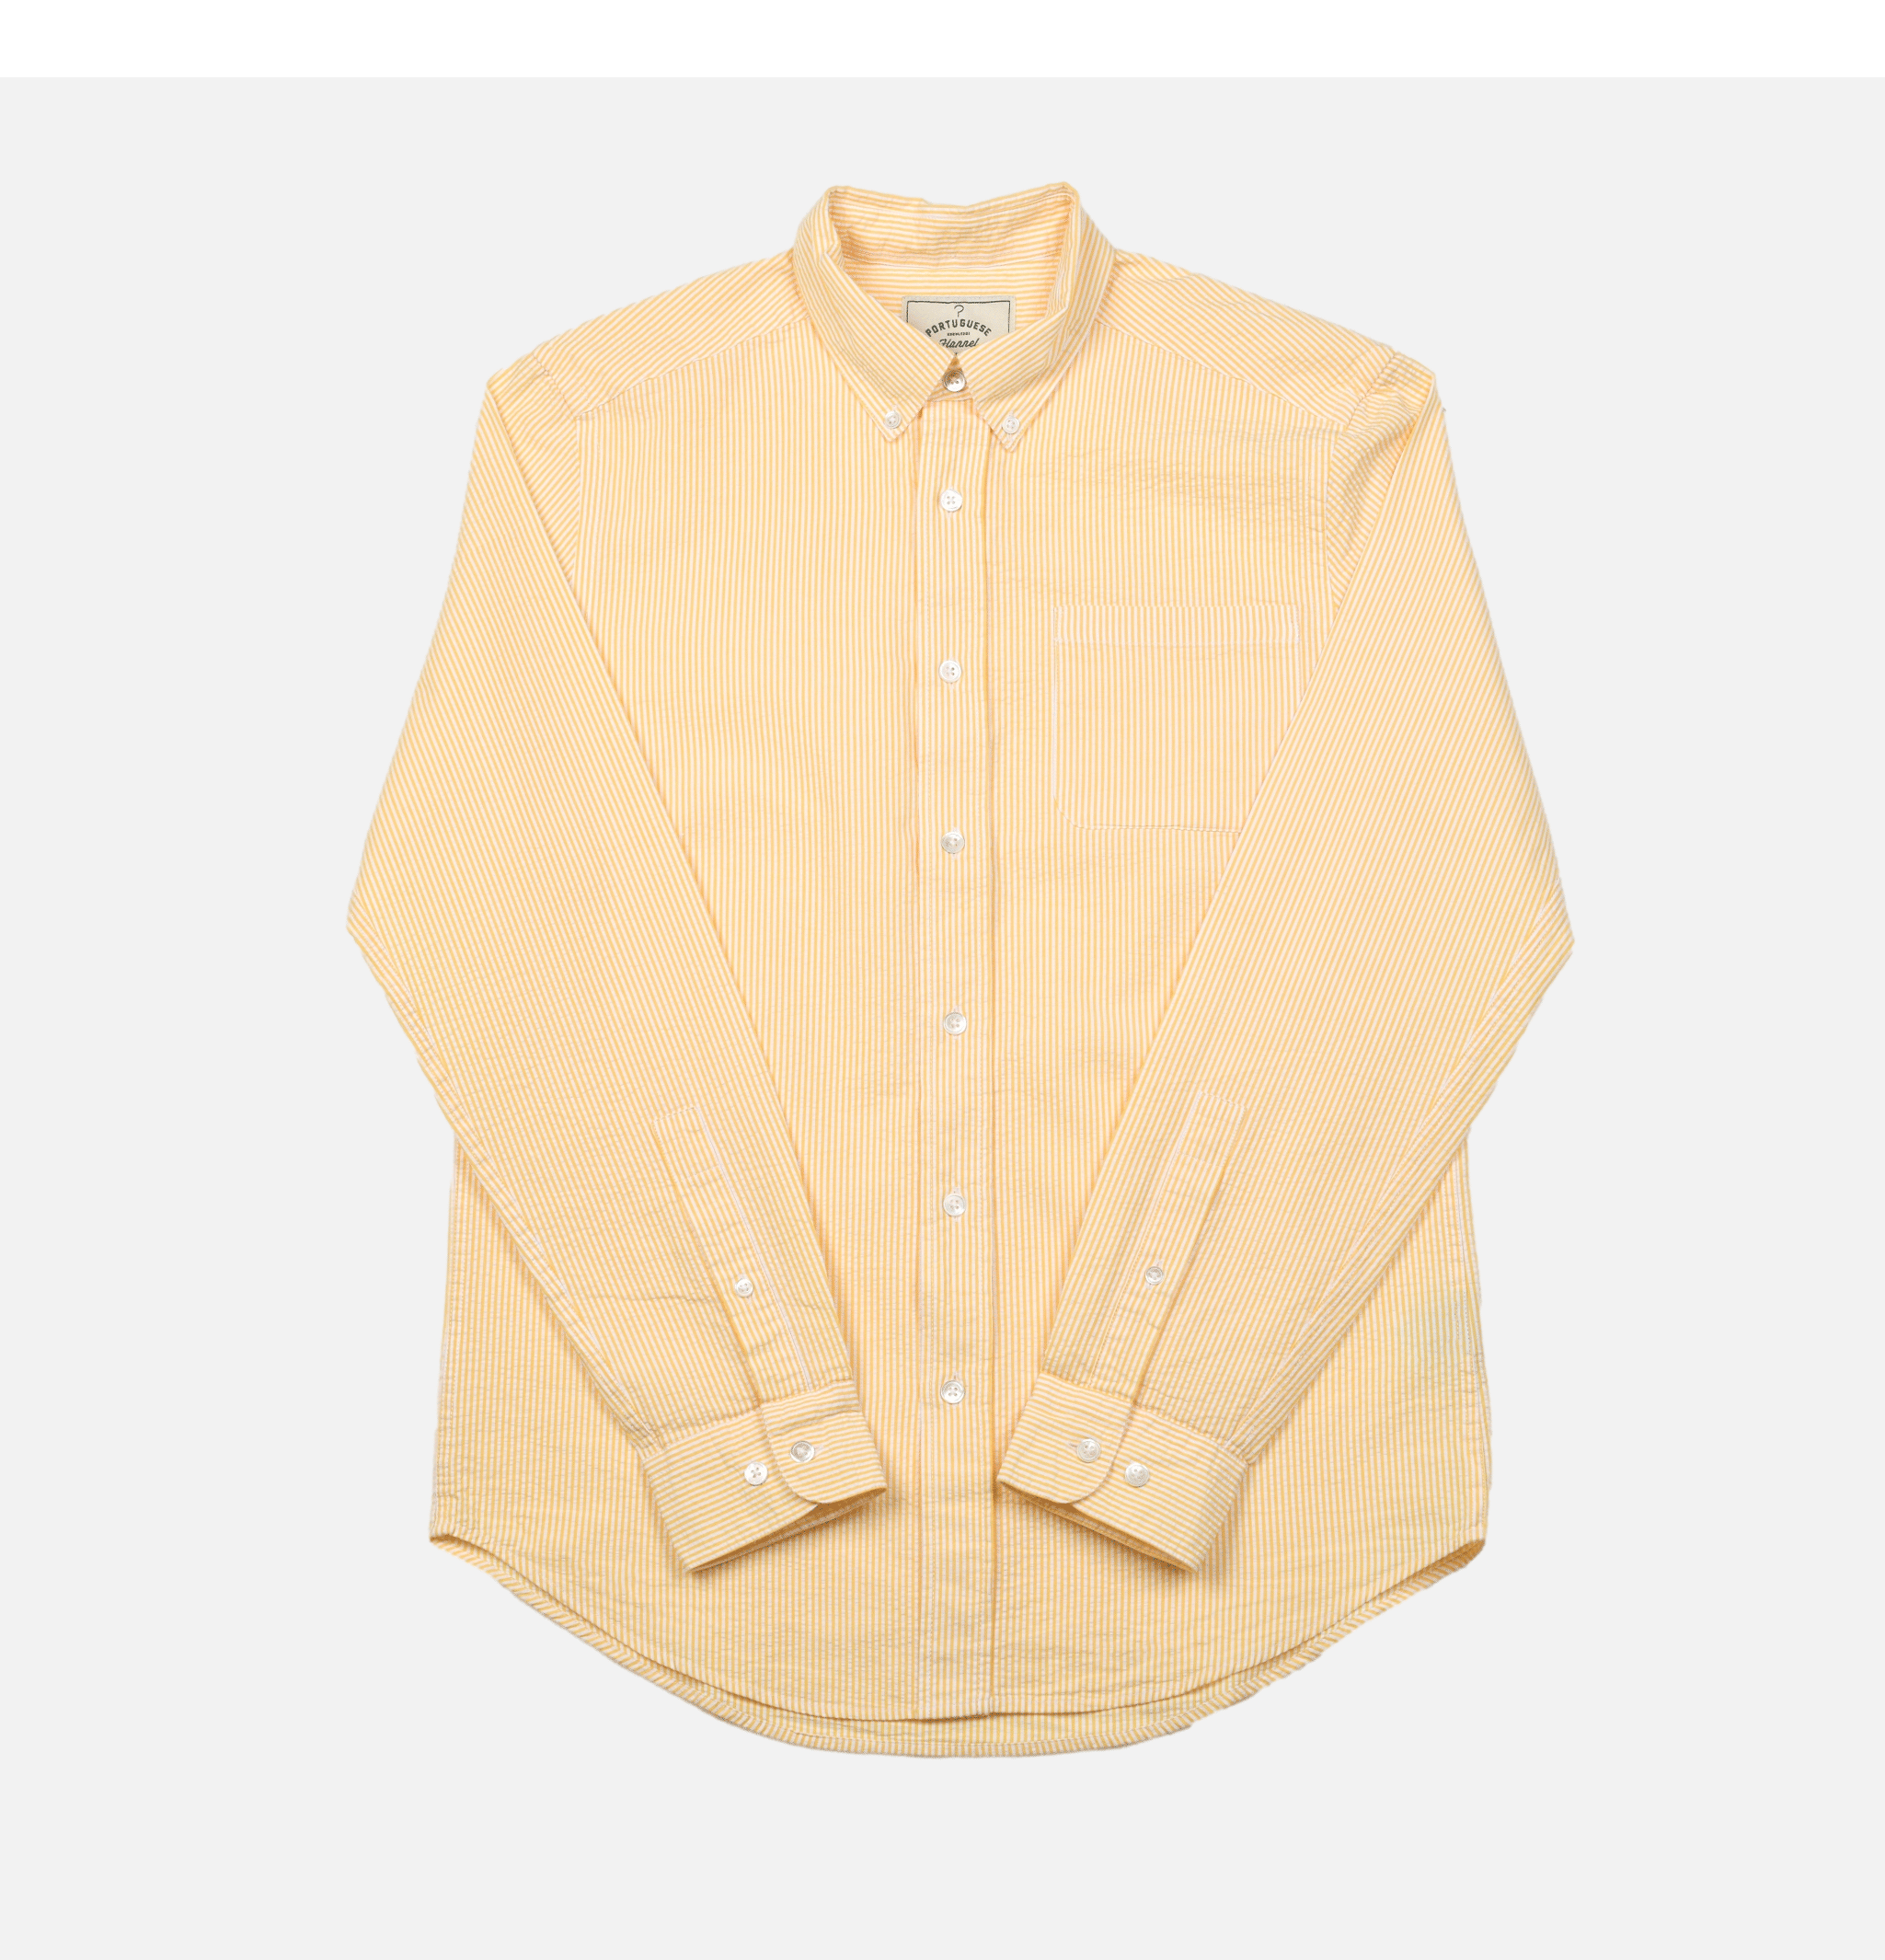 Atlantico Stripe Yellow Portuguese Flannel shirt